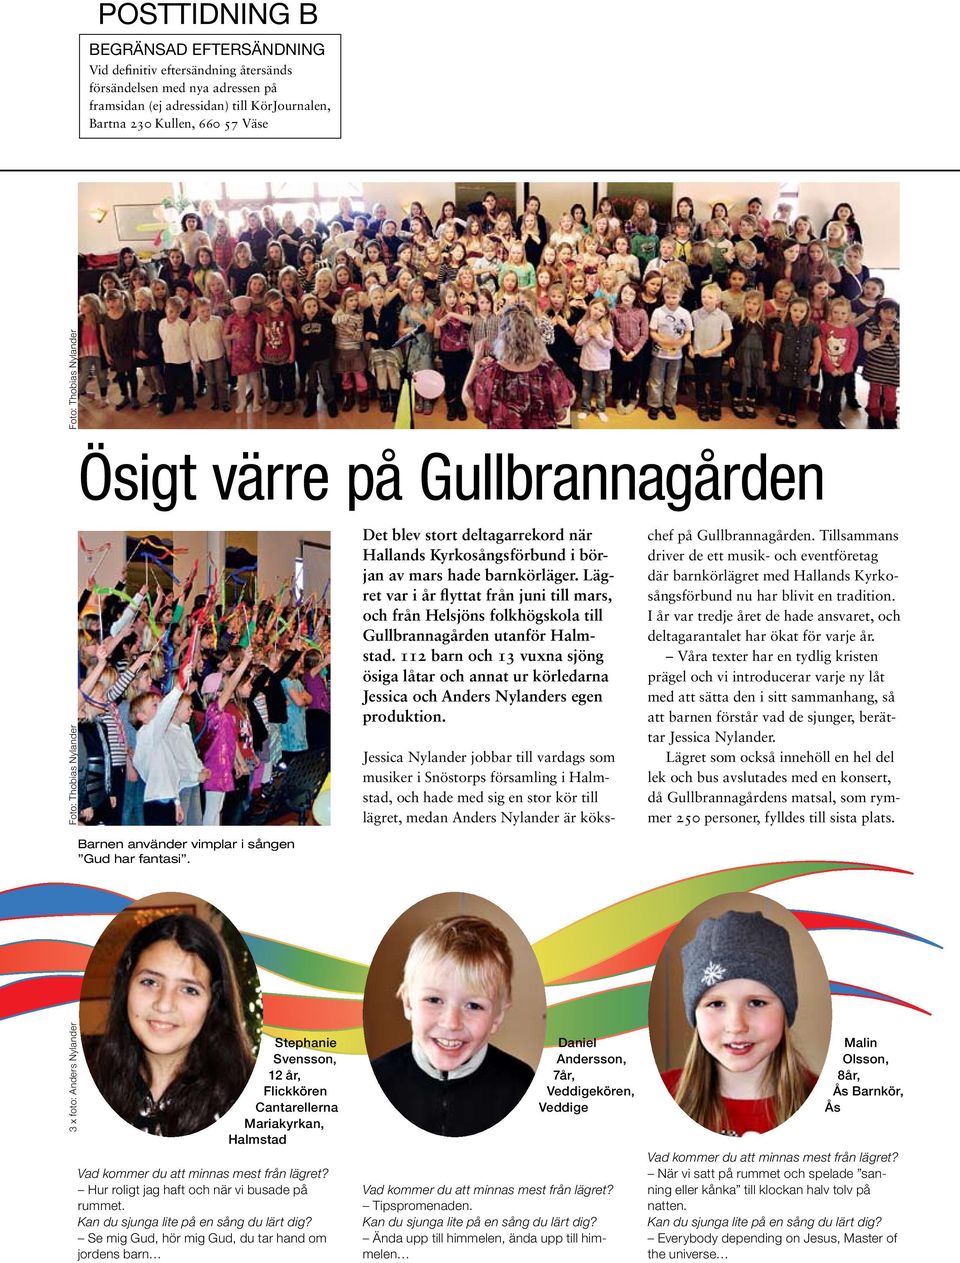 Det blev stort deltagarrekord när Hallands Kyrkosångsförbund i början av mars hade barnkörläger.